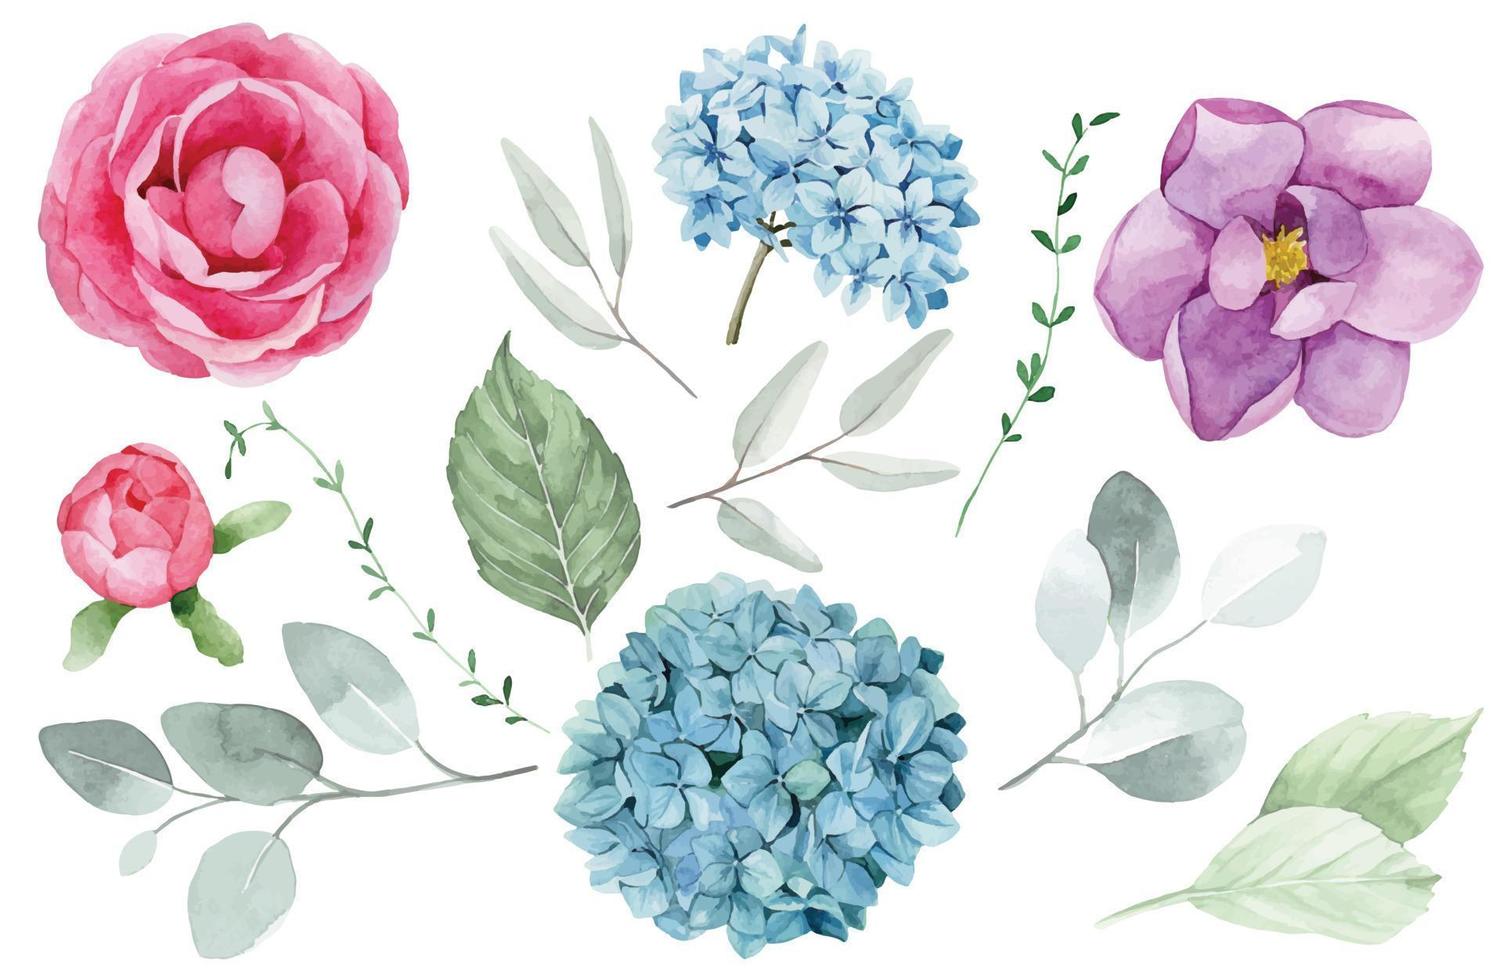 Aquarellzeichnung. Sammlung von Blumen und Blättern. rosafarbene, blaue, purpurrote Rosen-, Hortensien- und Magnolienblumen und grüne Eukalyptusblätter lokalisiert auf weißem Hintergrund. realistische Malerei. vektor